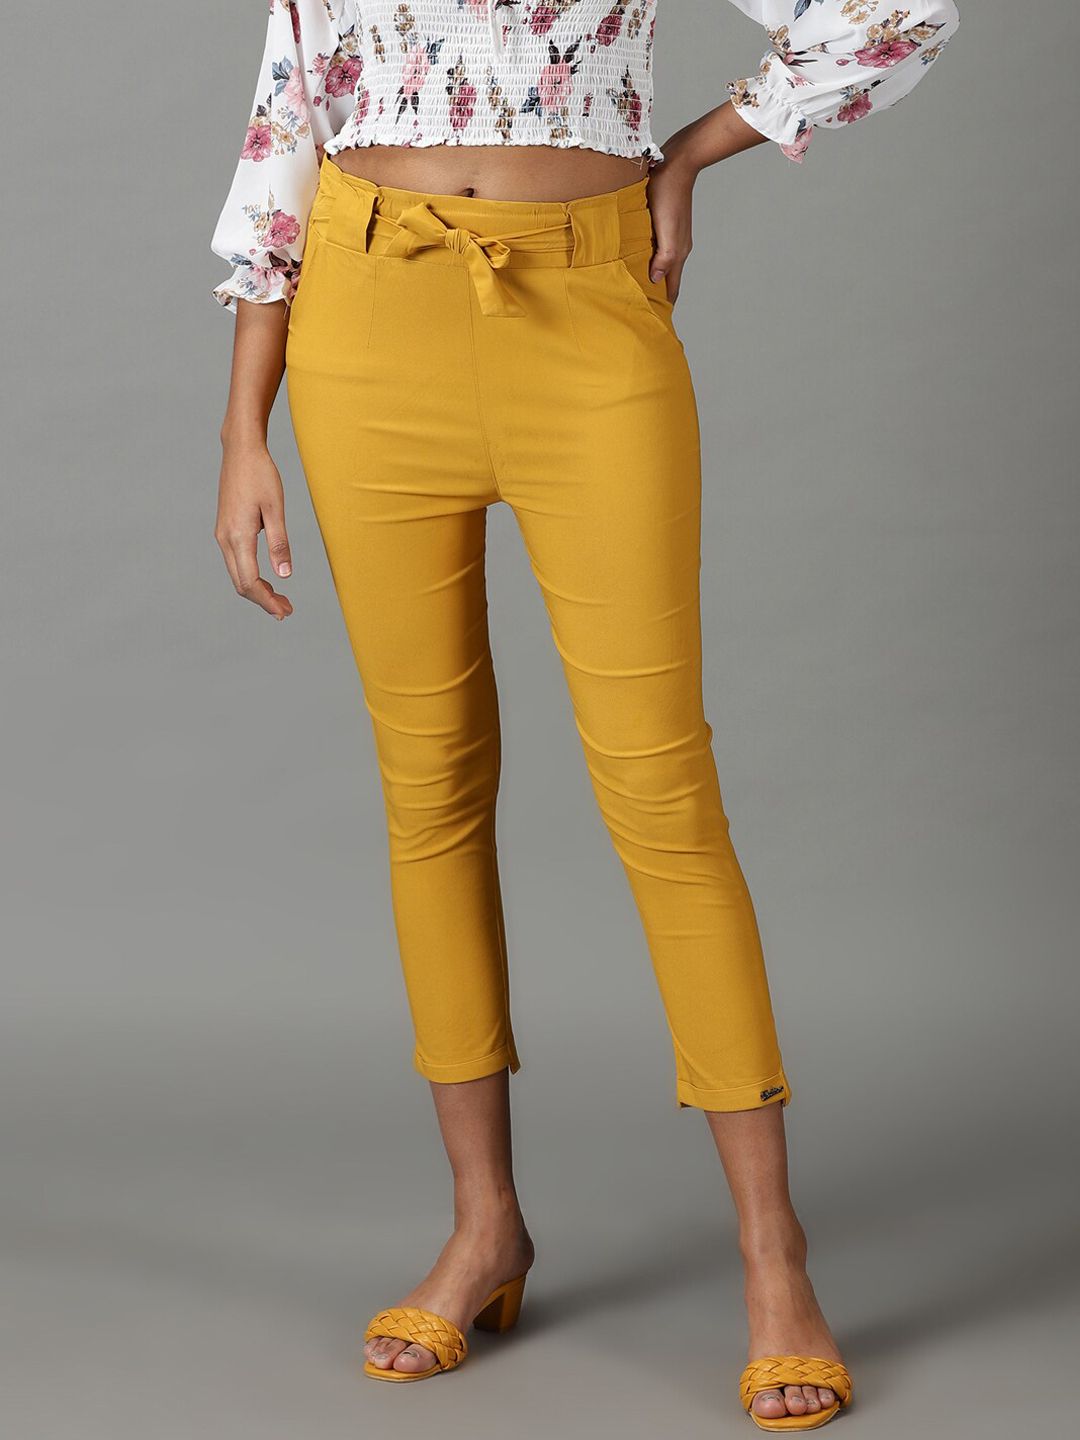 Buy Golden Trousers  Pants for Women by W Online  Ajiocom